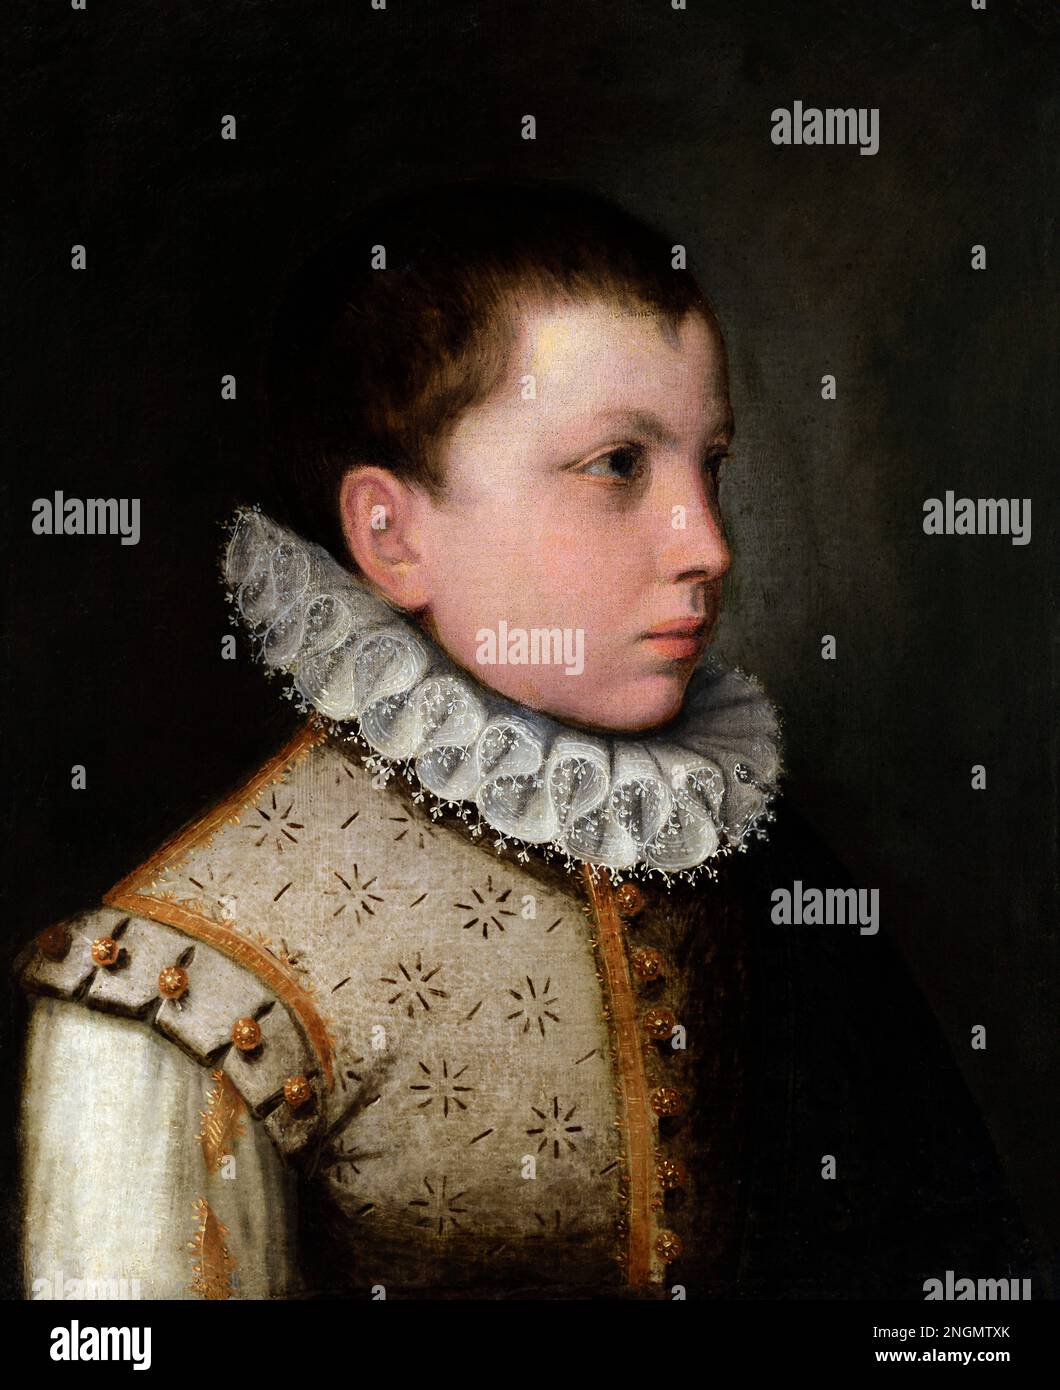 Der Junge der Gonzaga-Dynastie, der Sofonisba Anguissola zugeschrieben wird (c. 1532-1625). Stockfoto